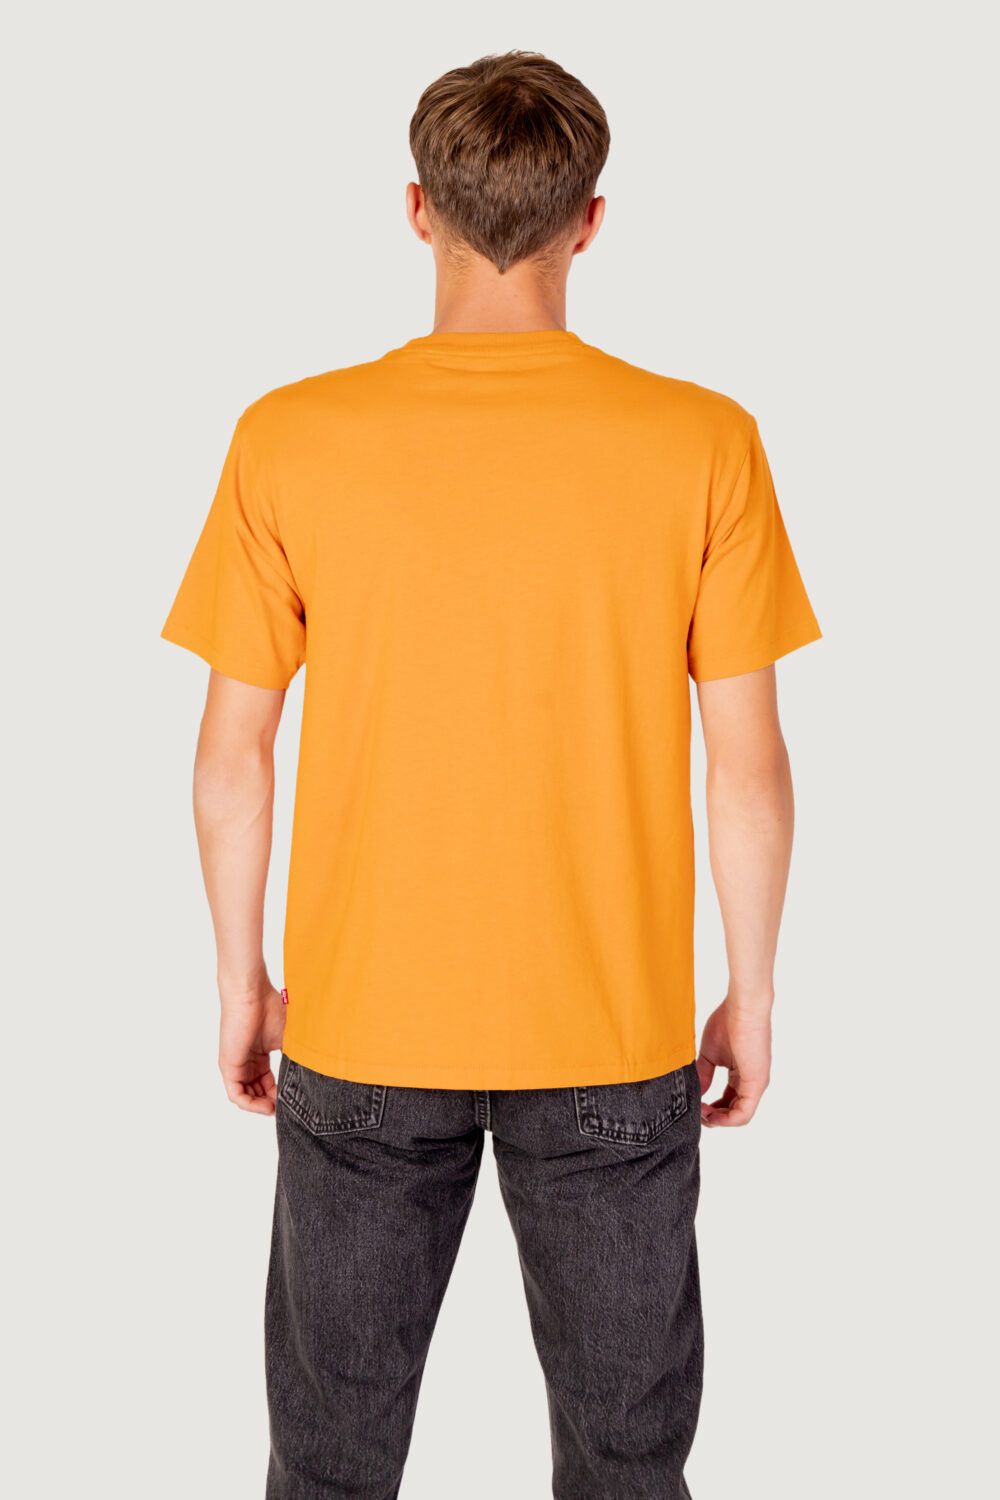 T-shirt Levi's® red tab vintage tee Arancione - Foto 6